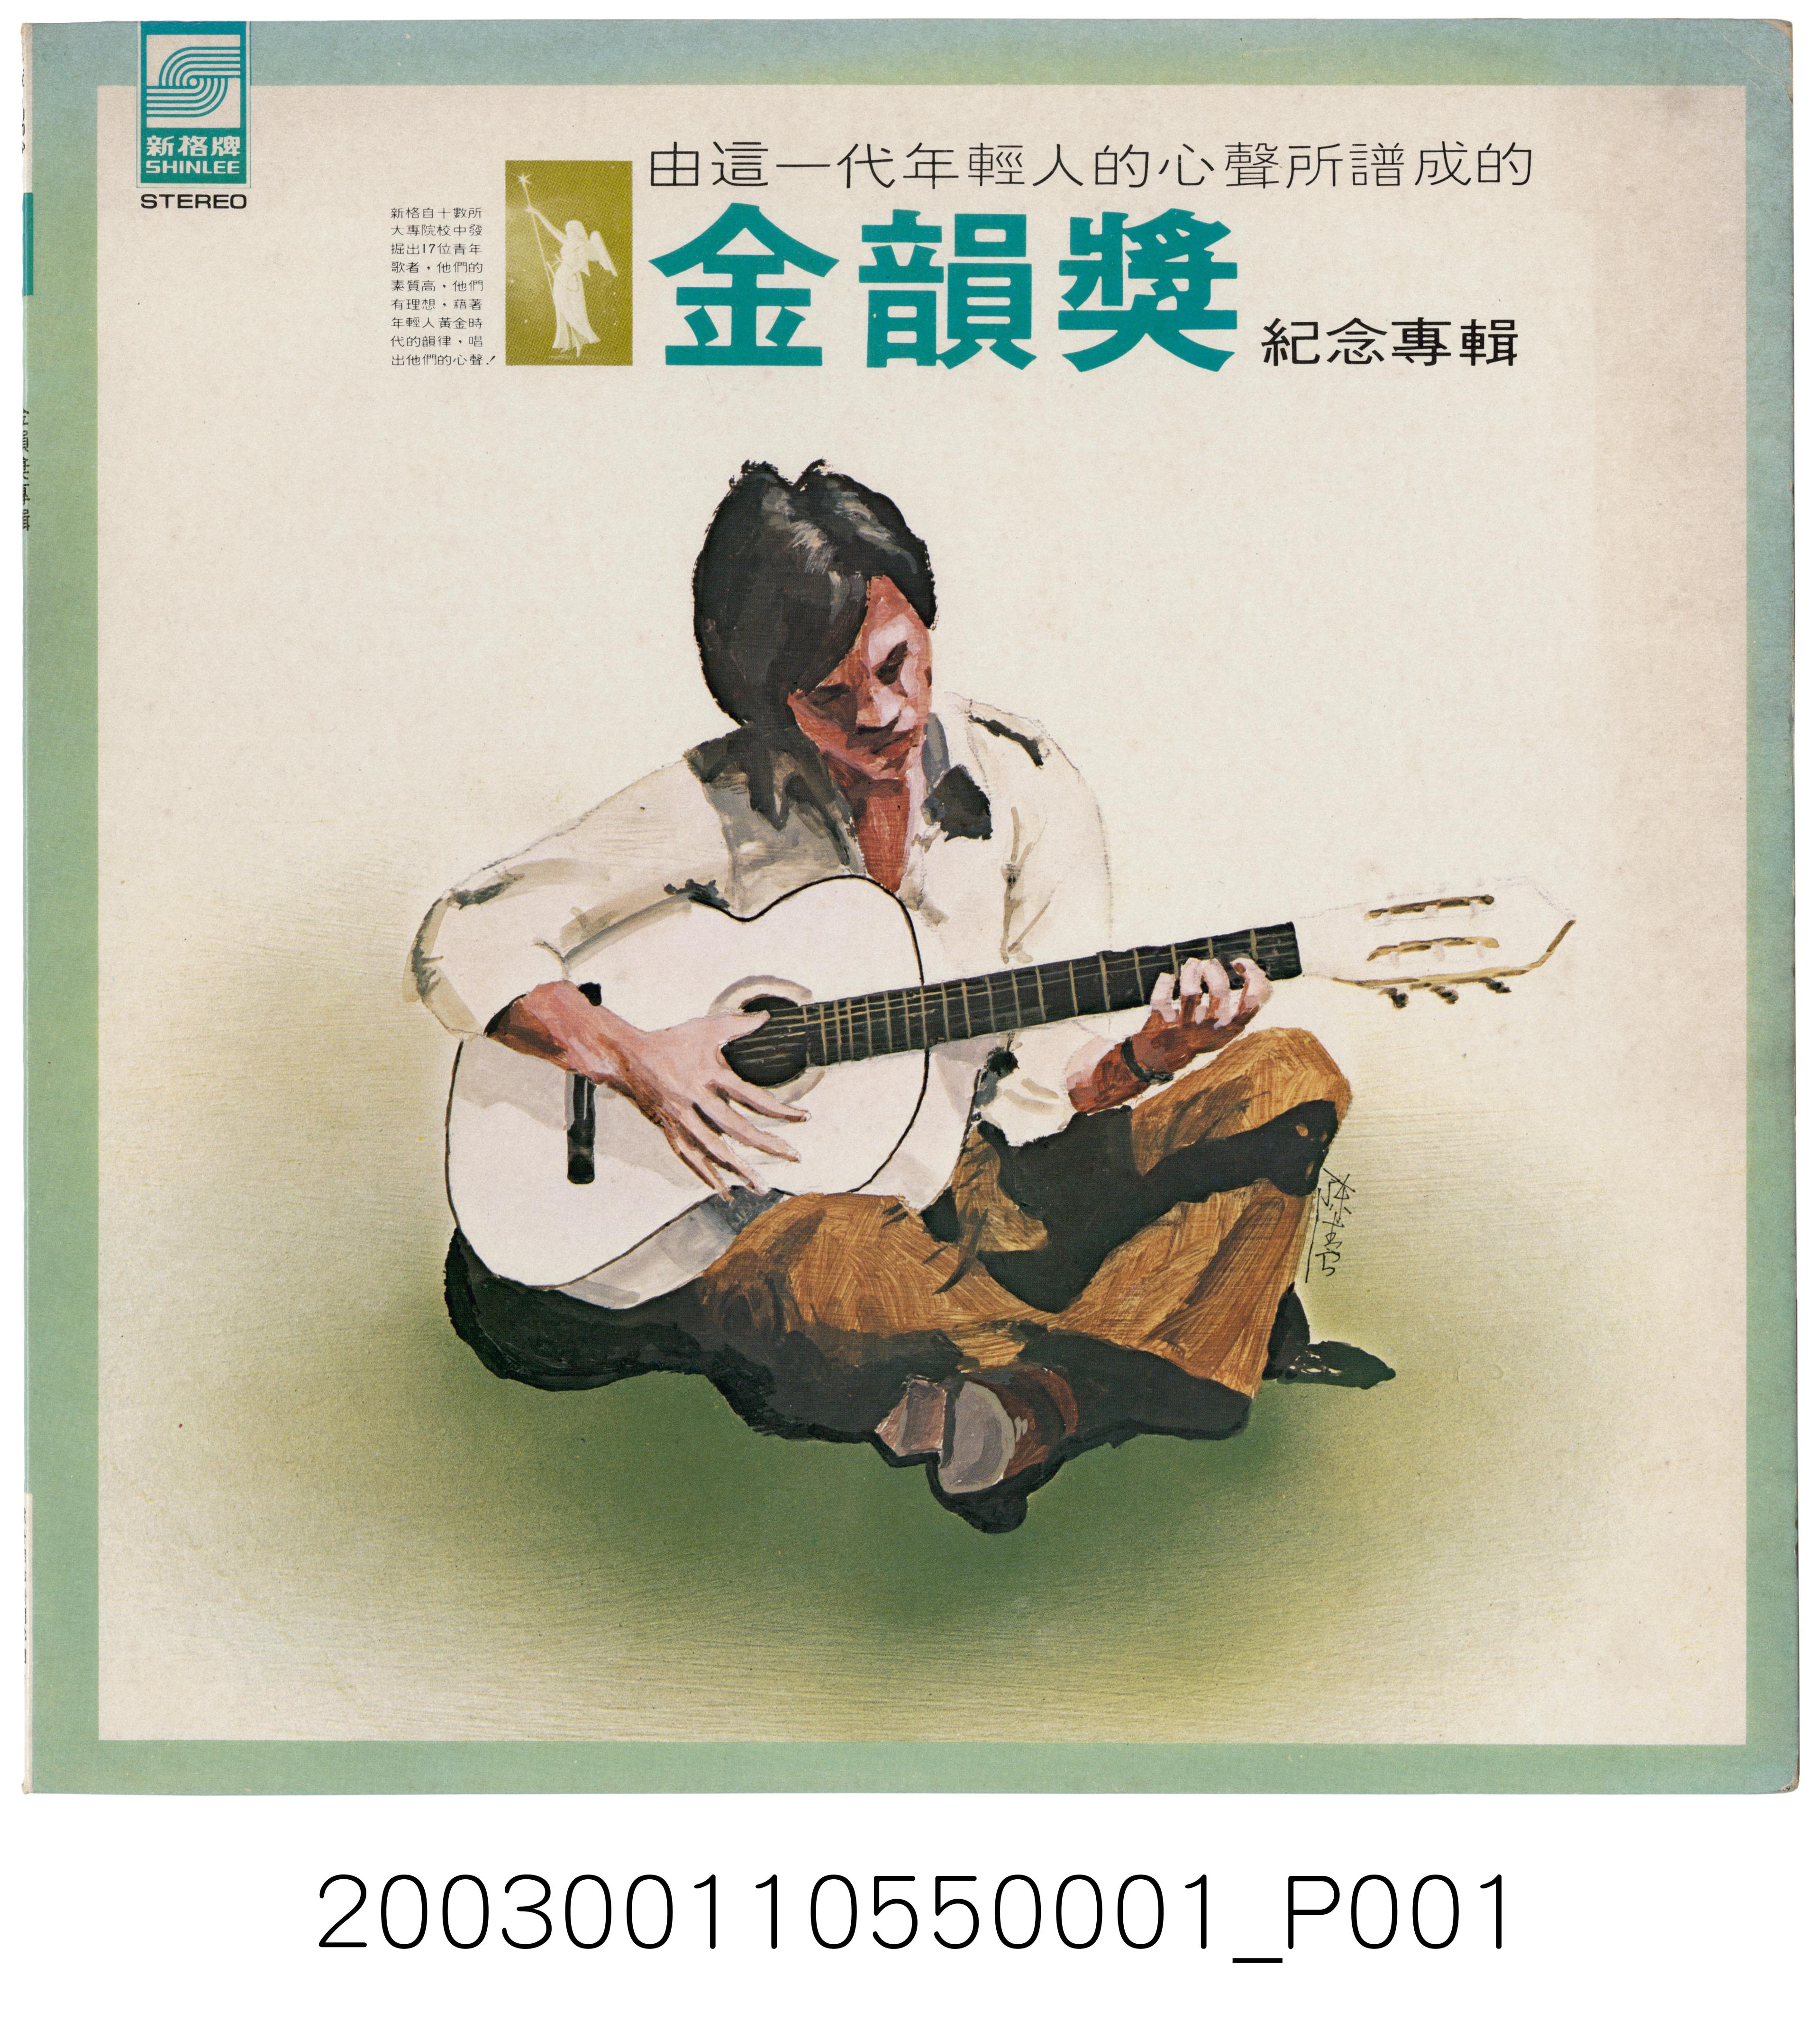 新力股份有限公司發行新格牌唱片編號「VH-004」國語歌曲專輯《金韻獎紀念專輯》專用封套 (共2張)